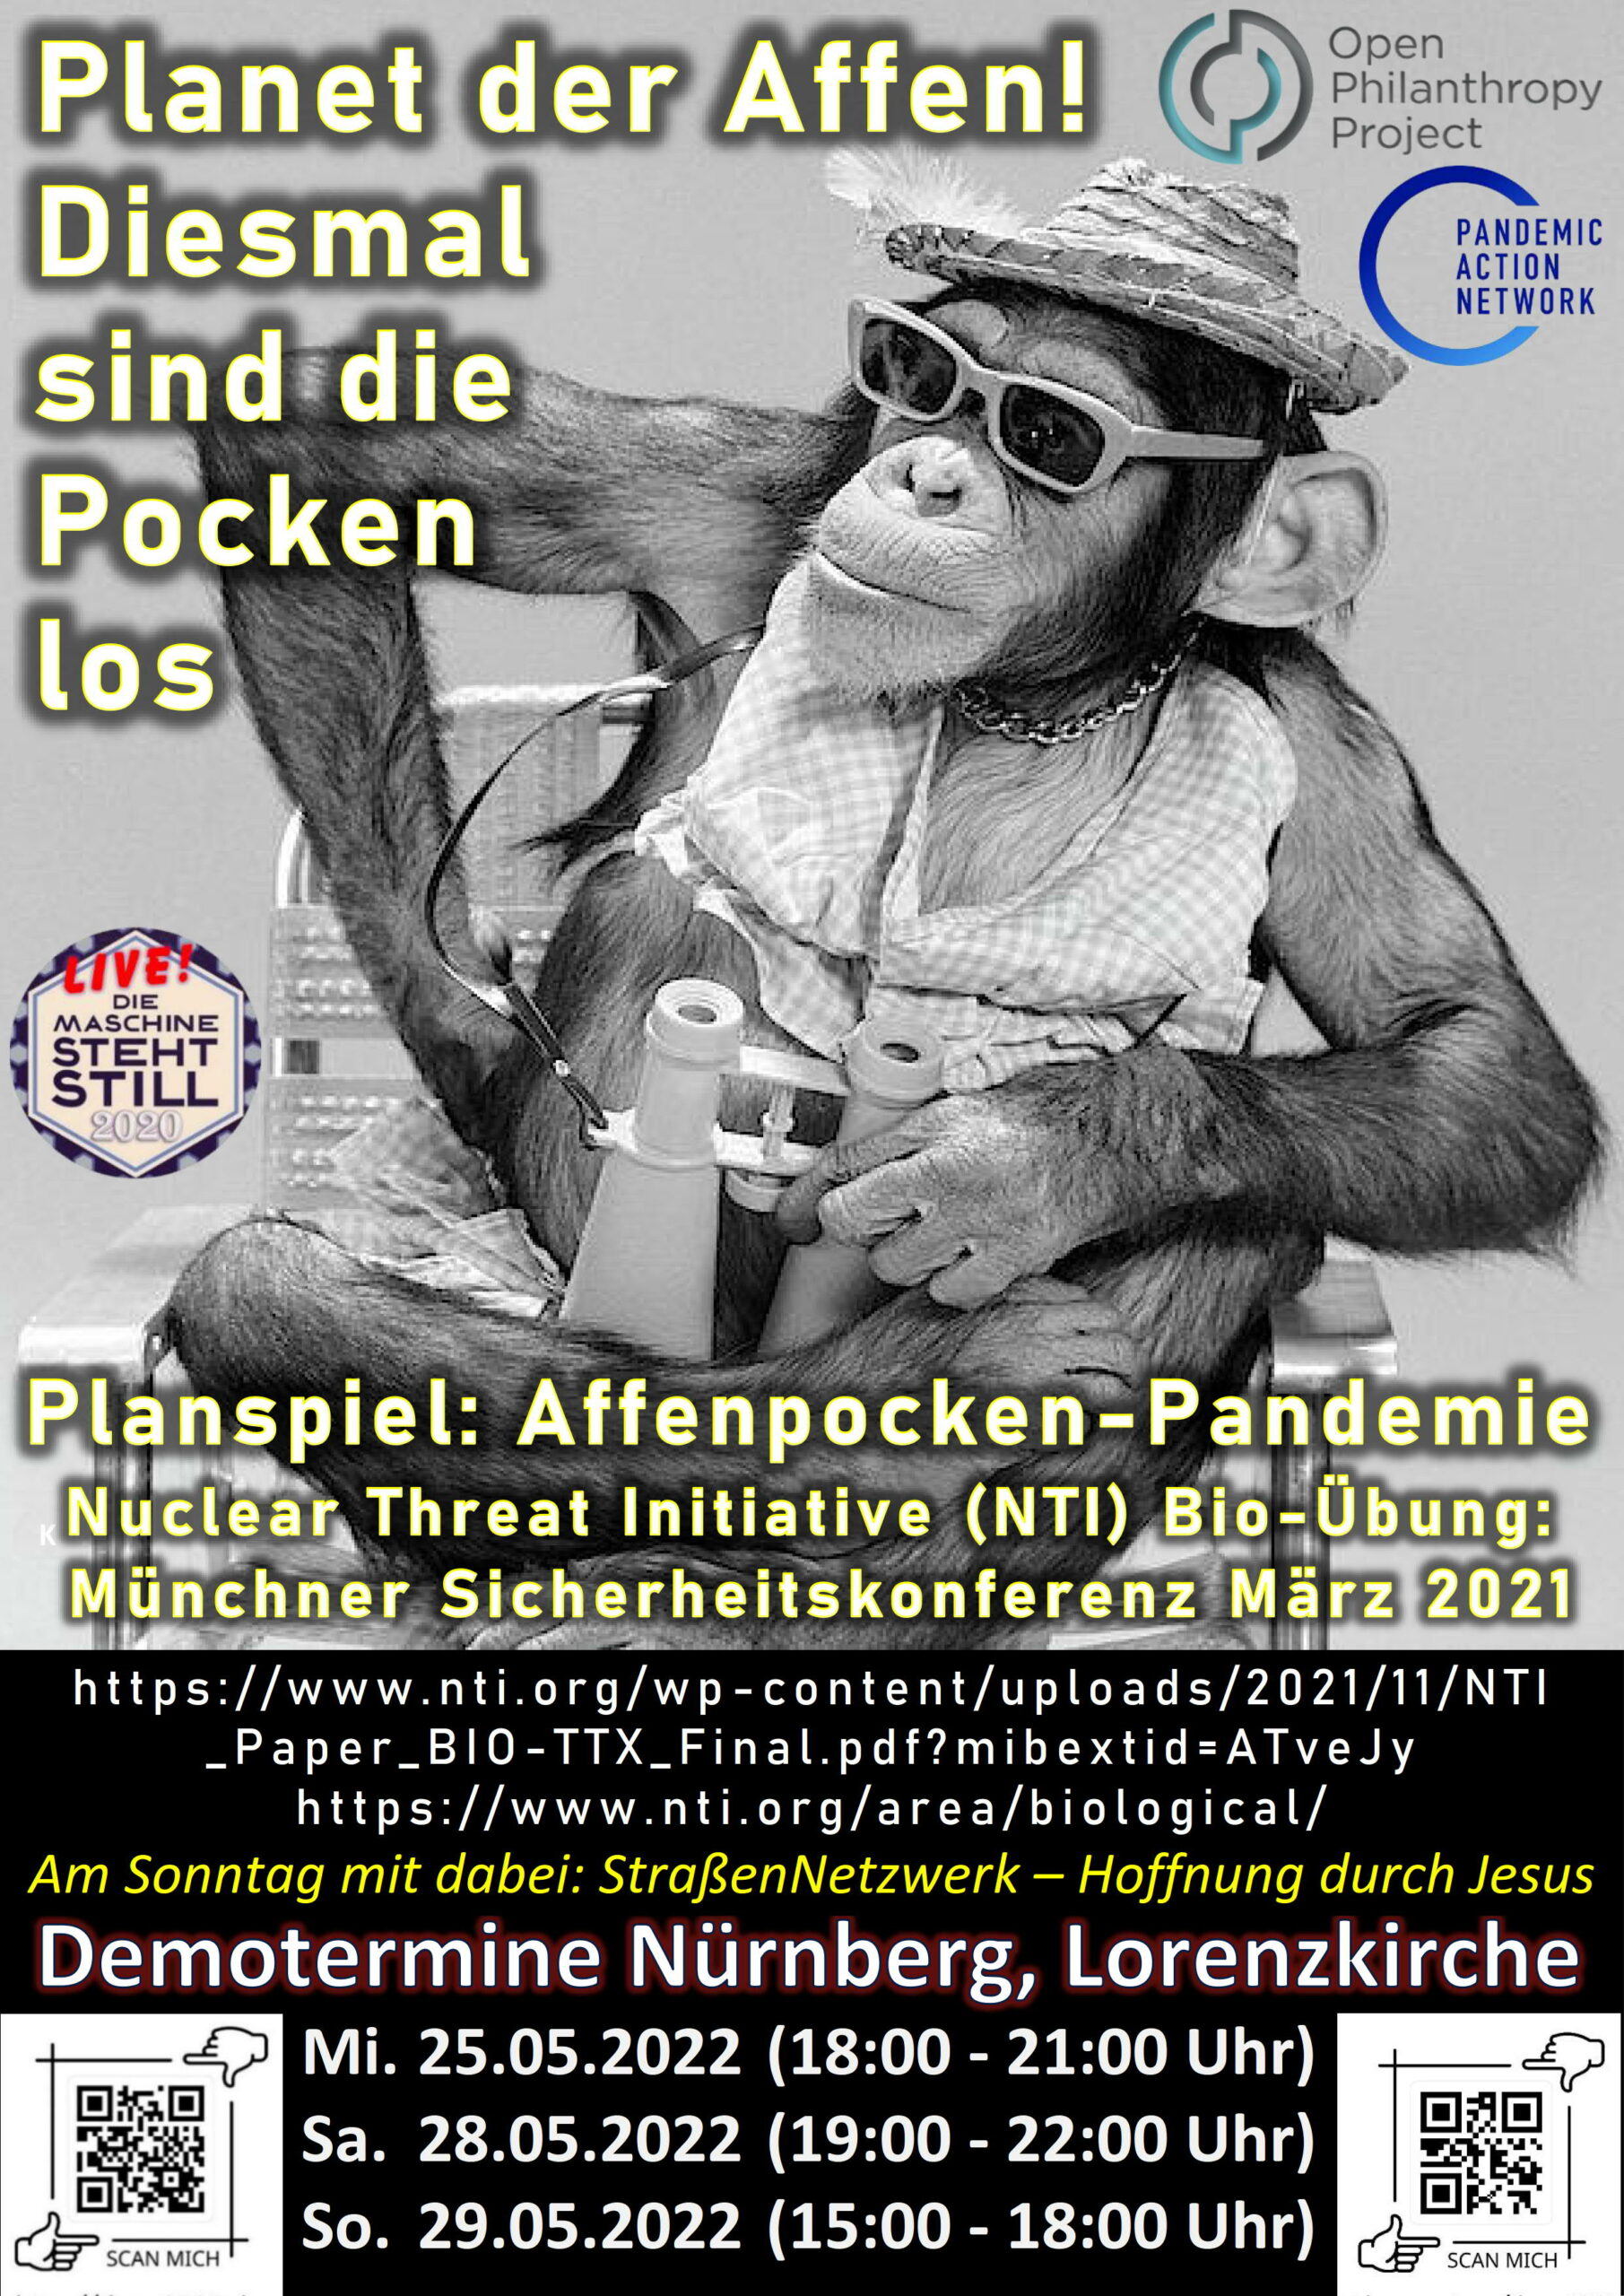 Planet der Affen! Diesmal sind die Pocken los Planspiel: Affenpocken-Pandemie Nuclear Threat Initiative (NTI) Bio-Übung: Münchner Sicherheitskonferenz März 2021